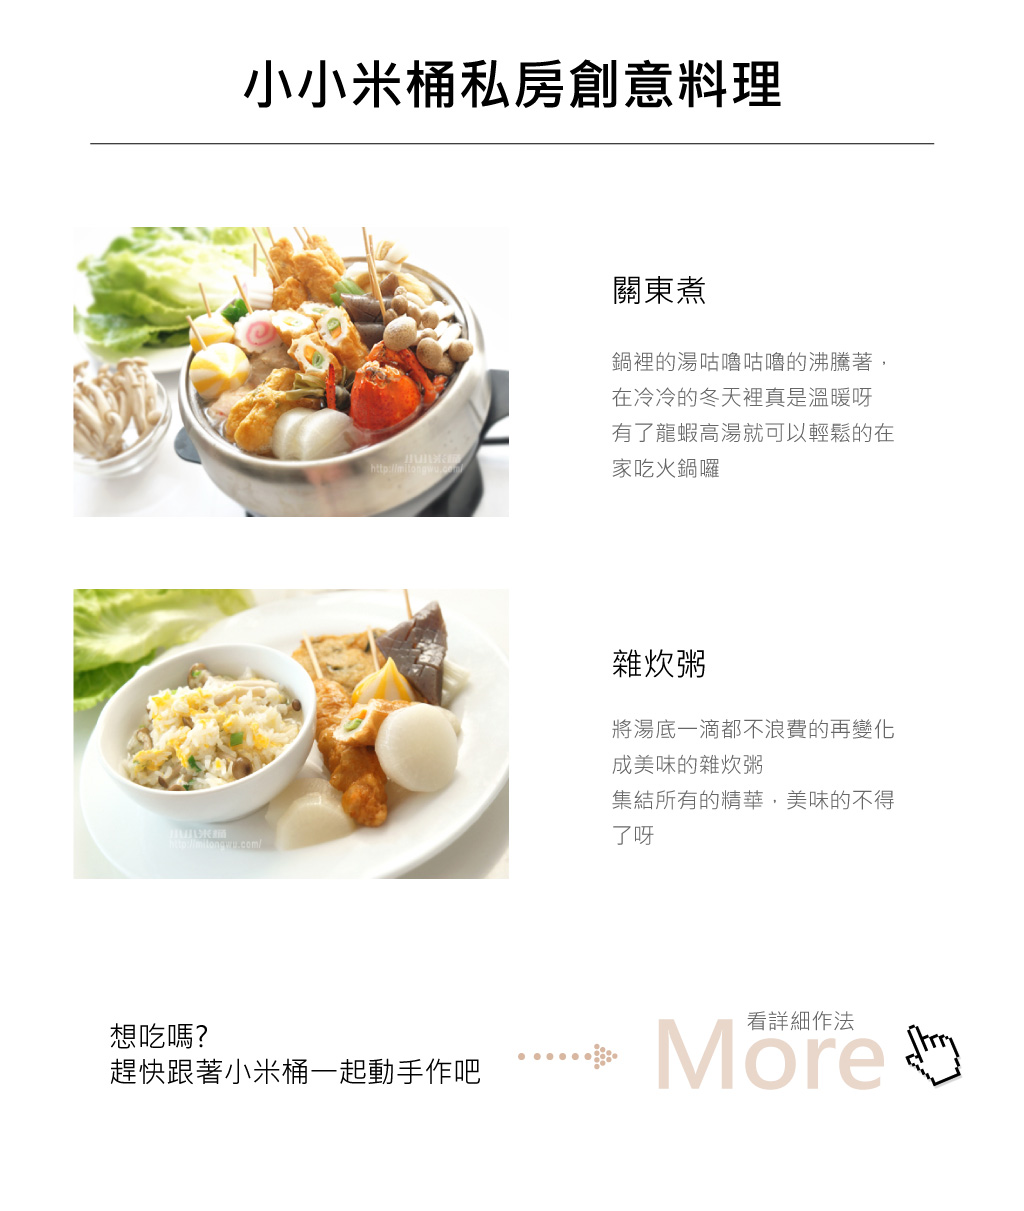 龍蝦高湯 - 小小米桶創意料理